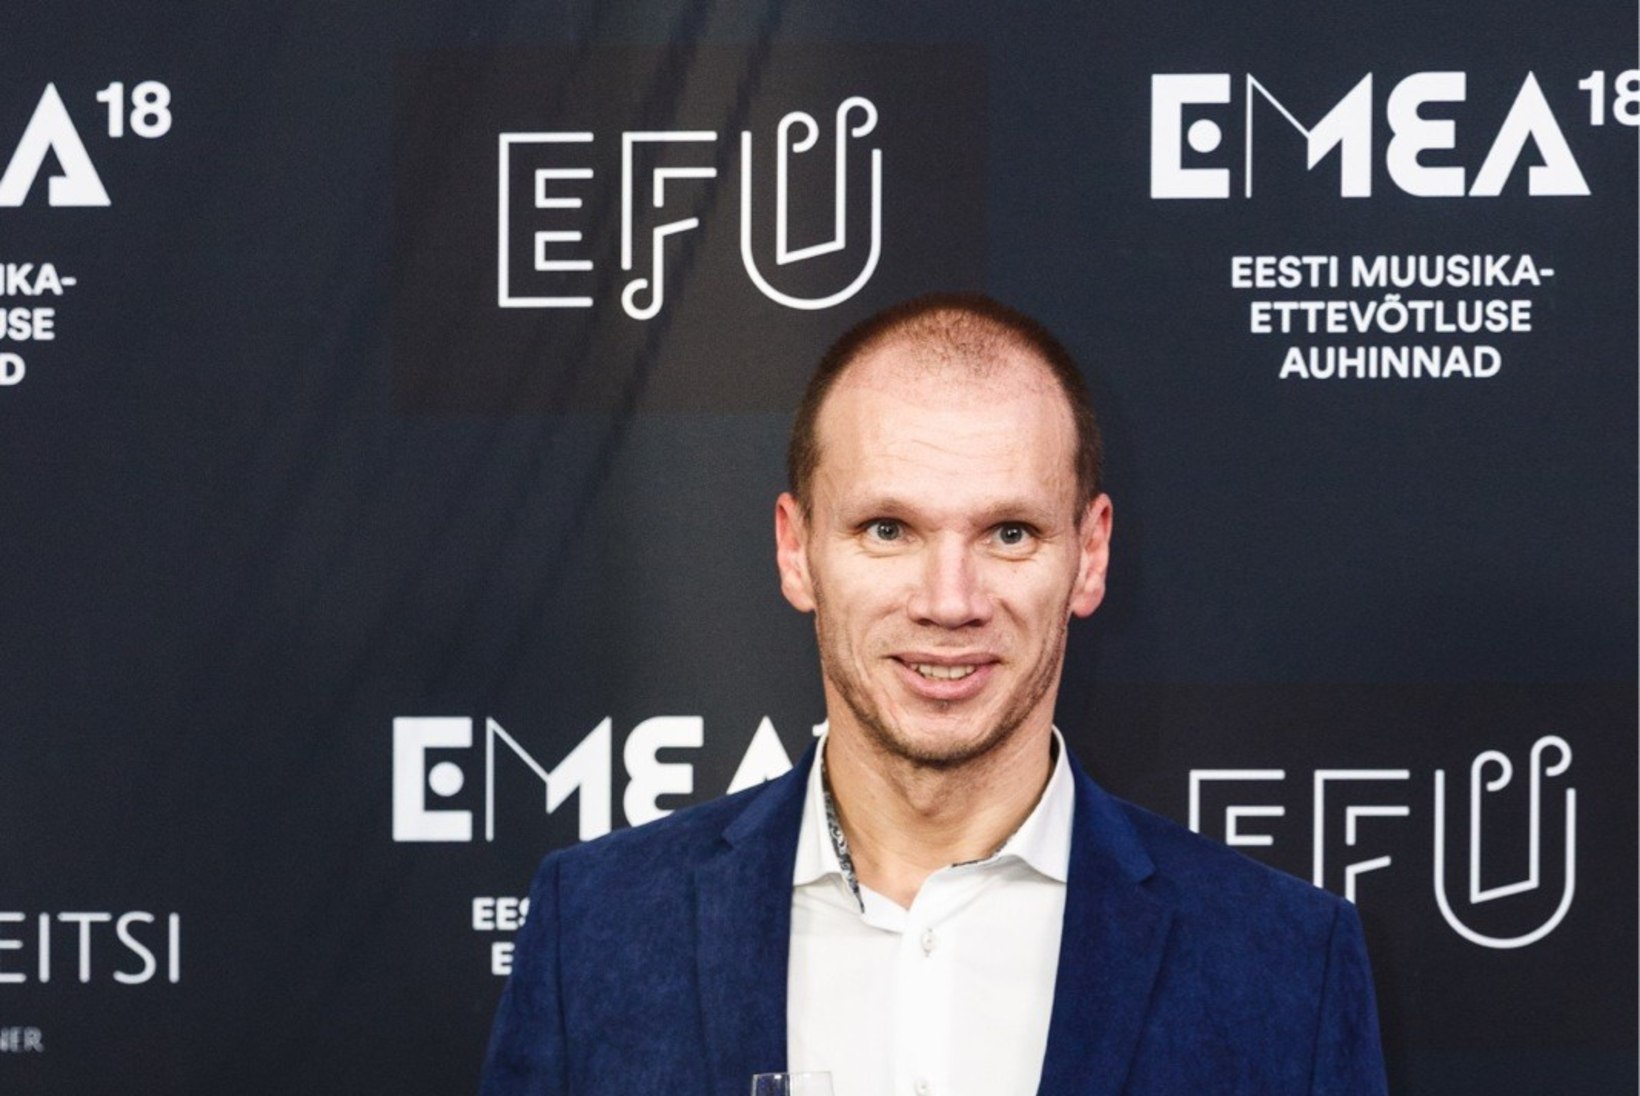 GALERII | Eesti muusikaettevõtluse auhinnad jagatud - enim priise pälvis Bert Prikenfeld